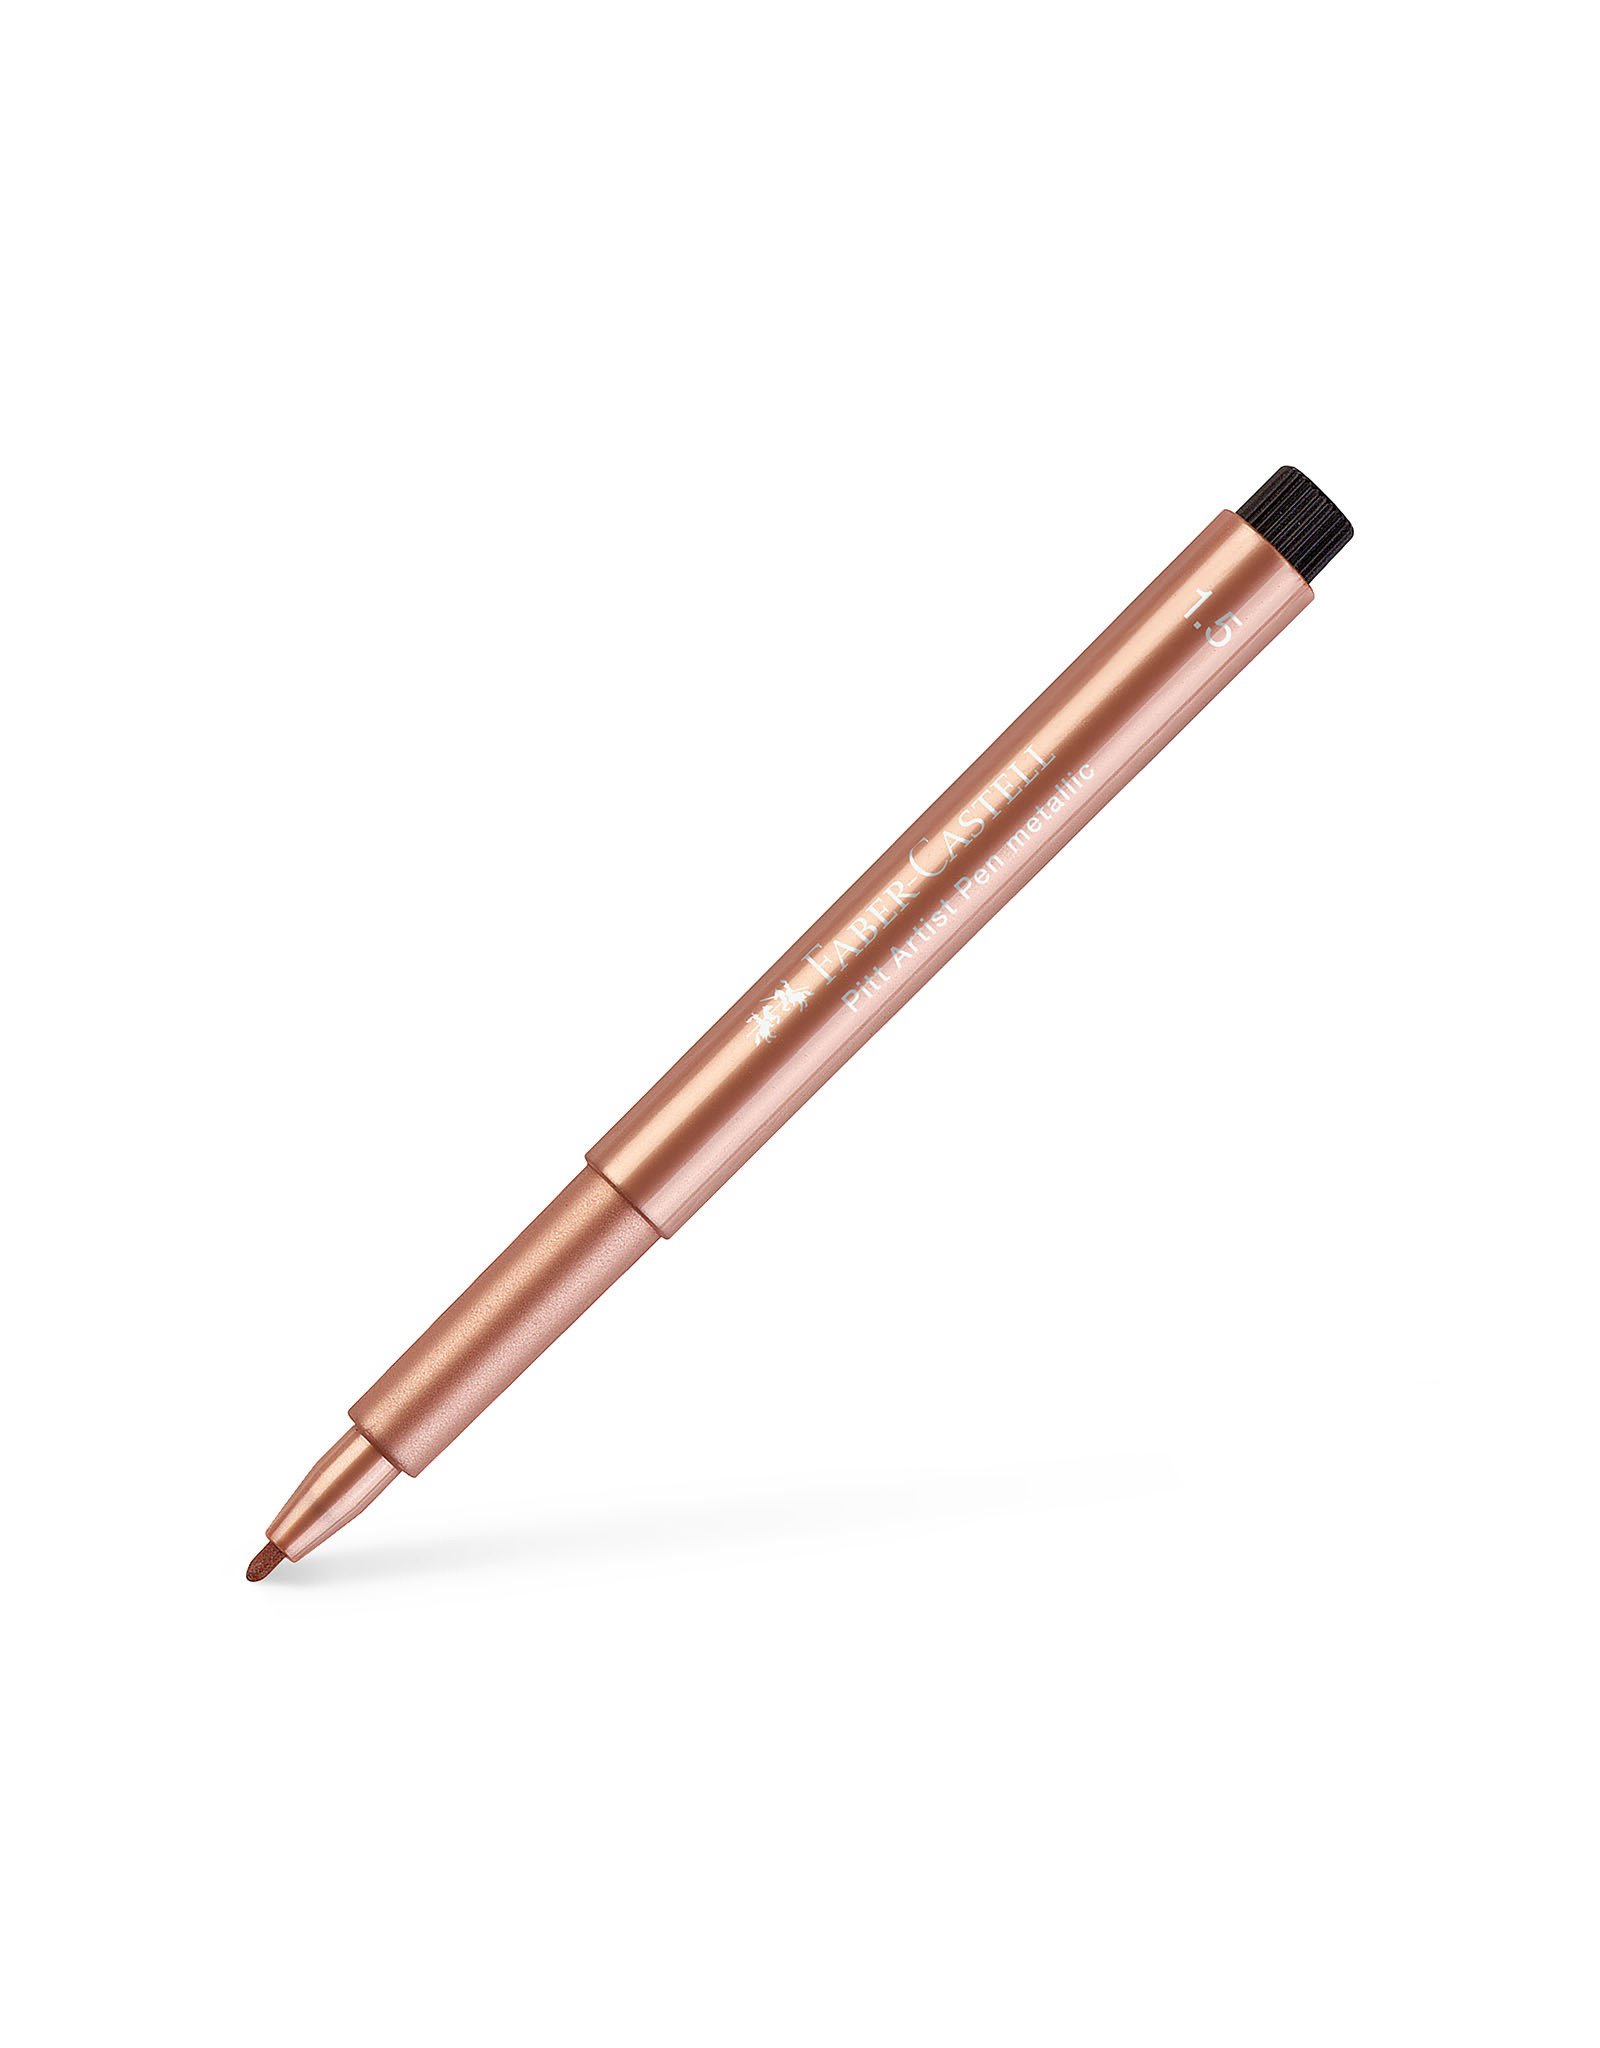 FABER-CASTELL Pitt Artist Pen, Bullet, Metallic Copper